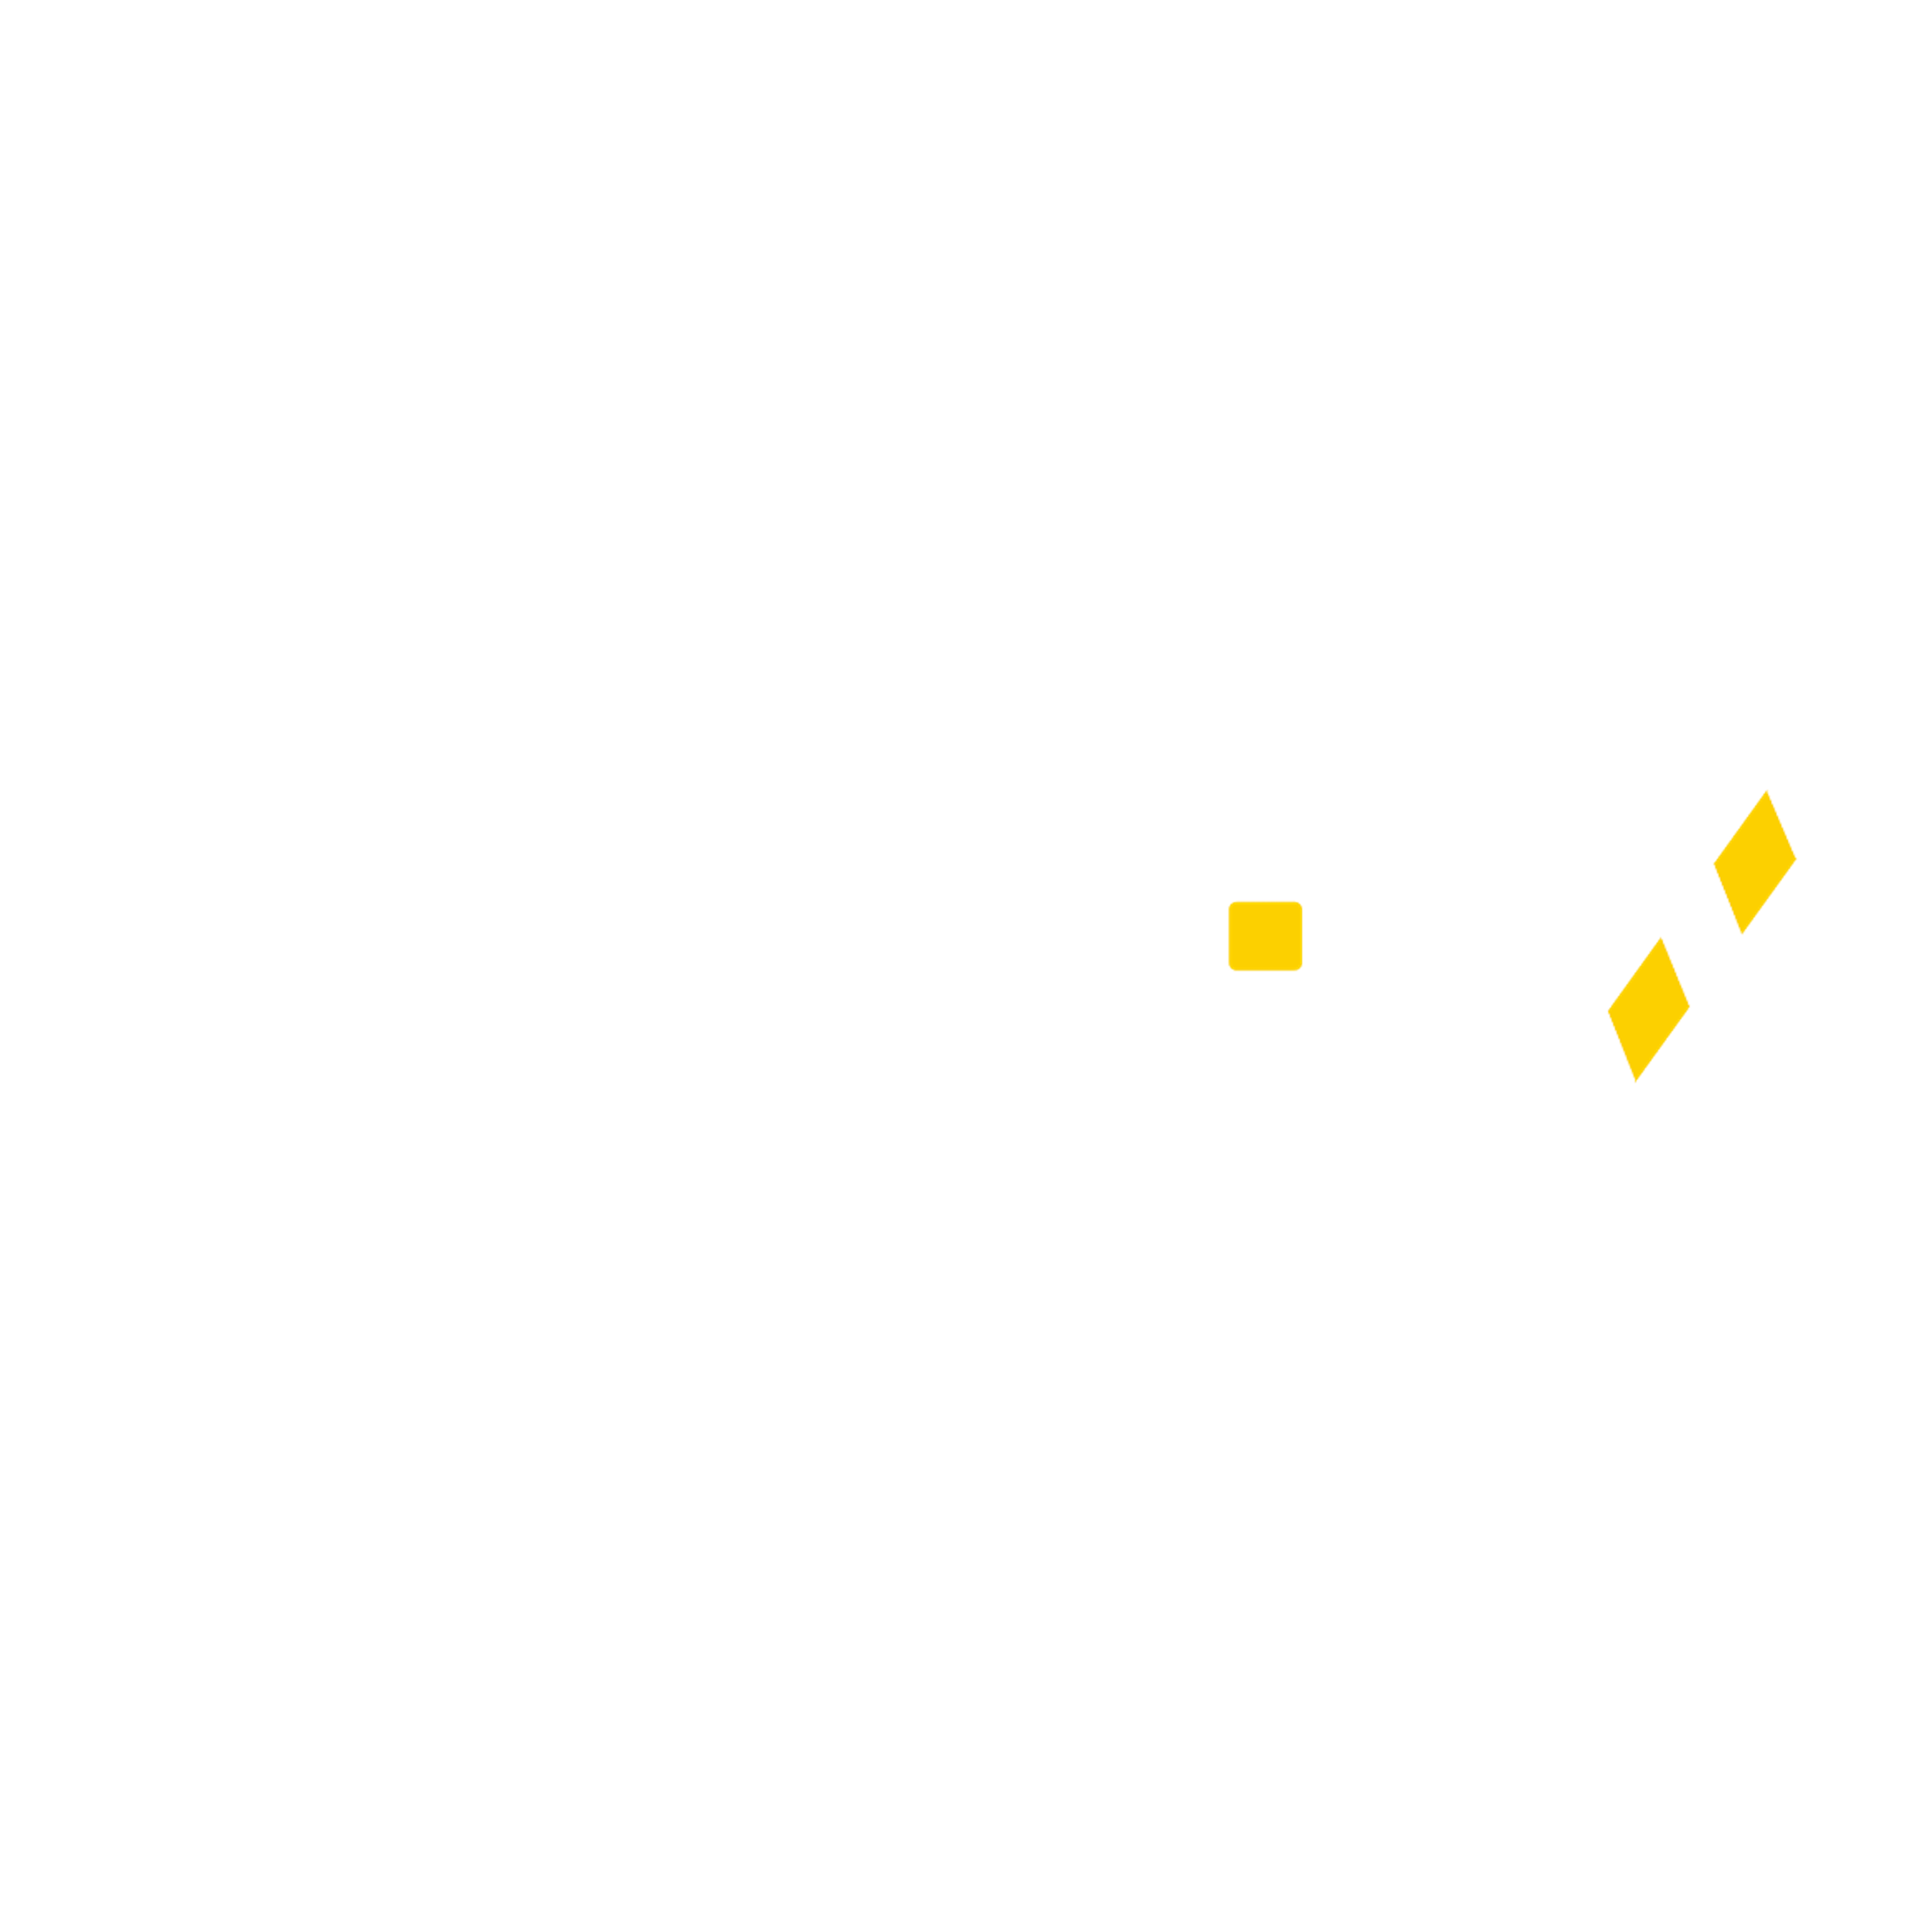 Yellow Network VIP Round